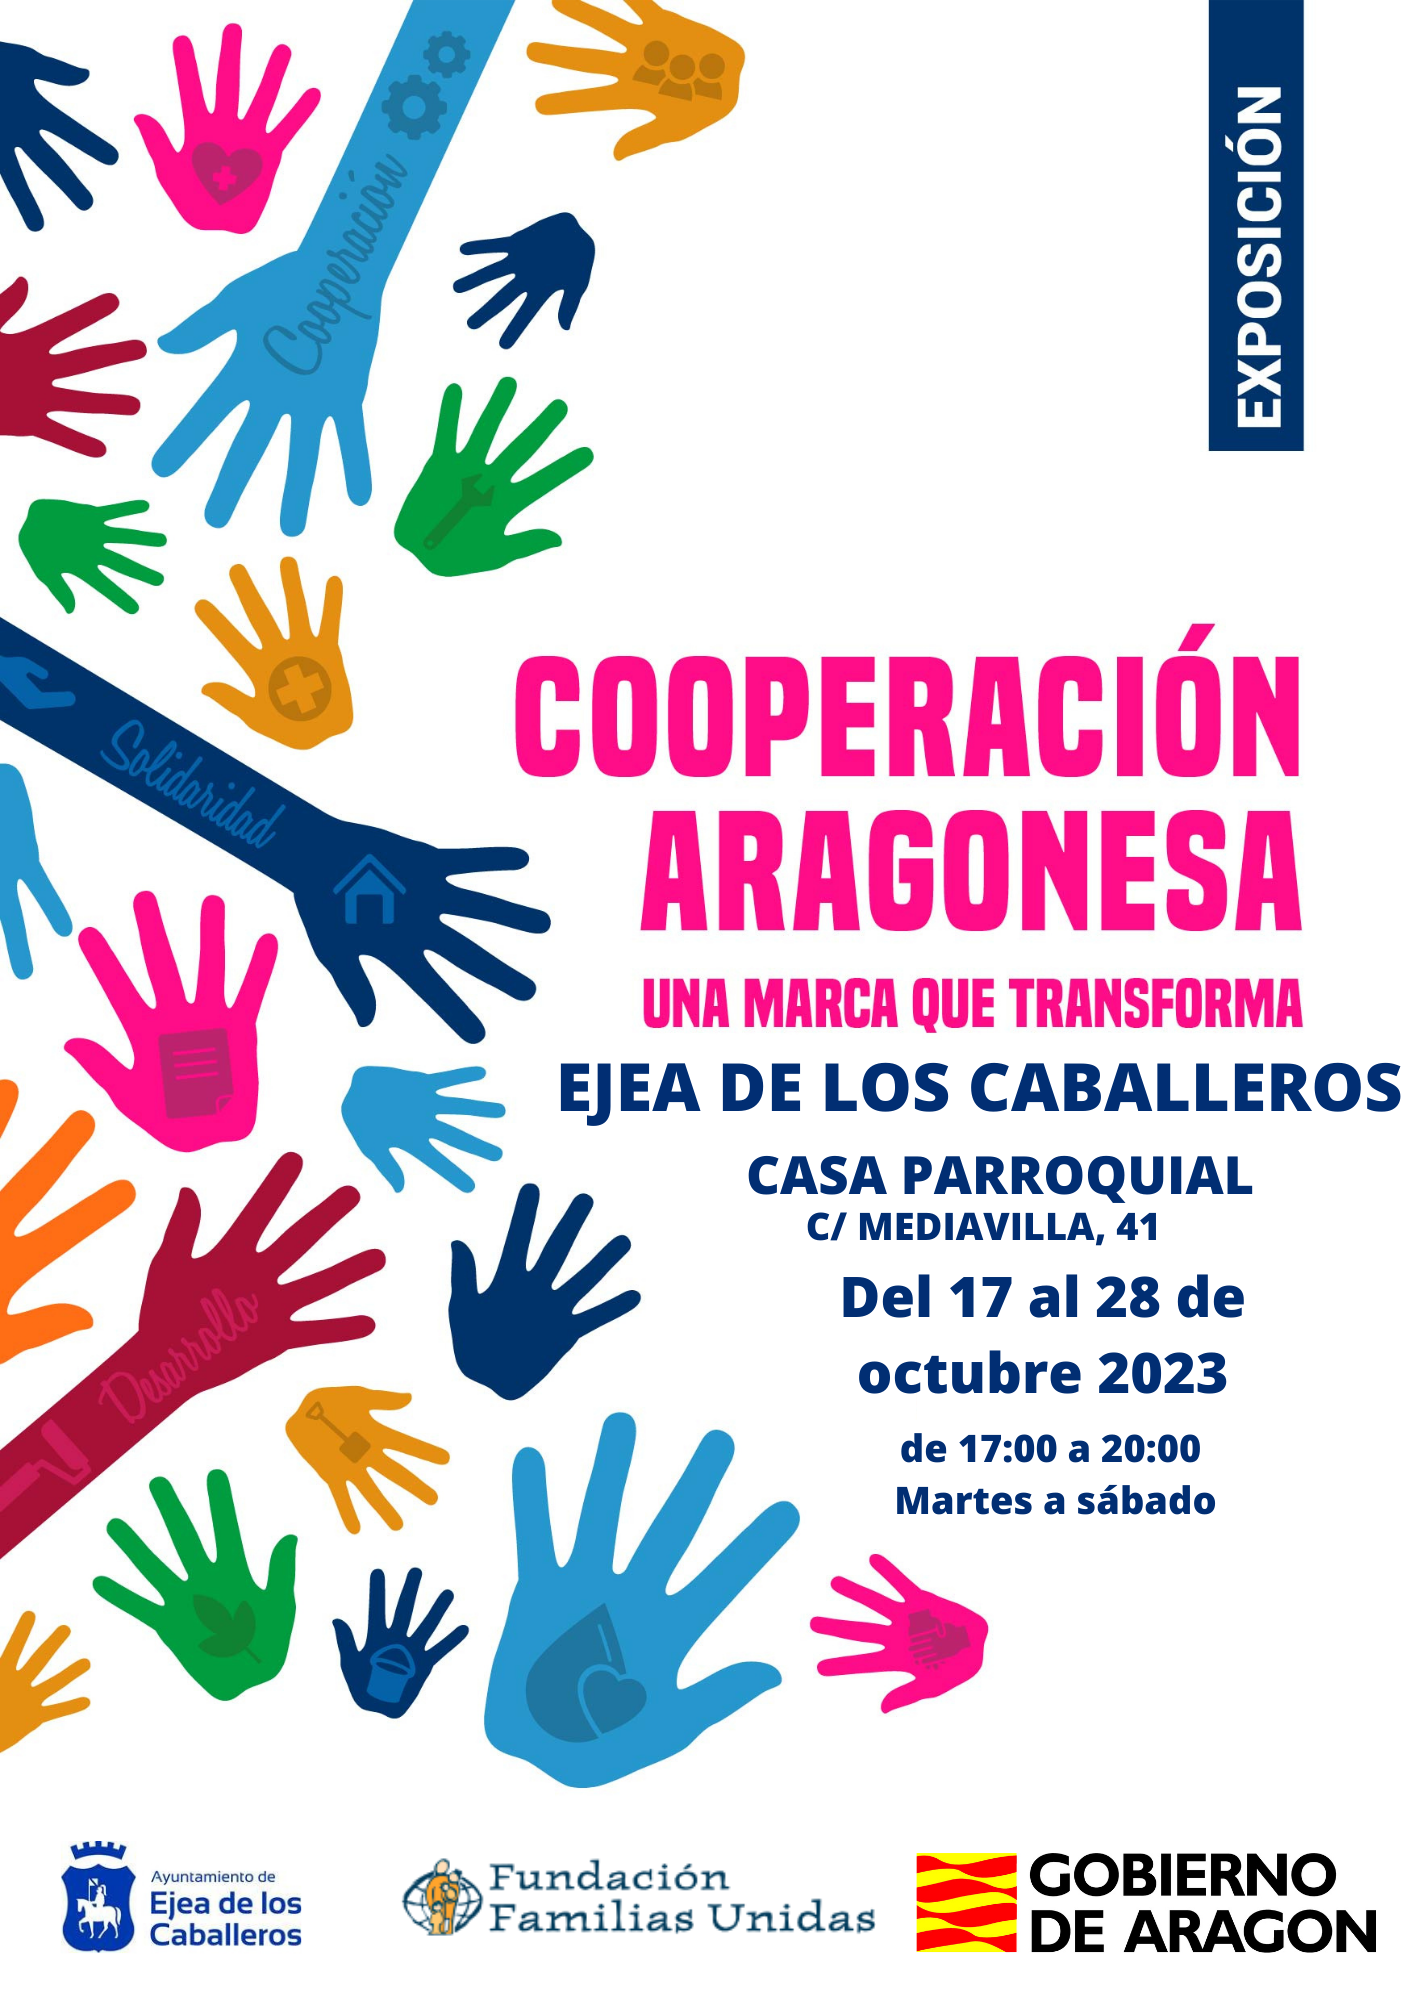 En este momento estás viendo La exposición interactiva “Cooperación Aragonesa: una marca que transforma” visita Ejea de la mano de la fundación Familias Unidas y el Gobierno de Aragón